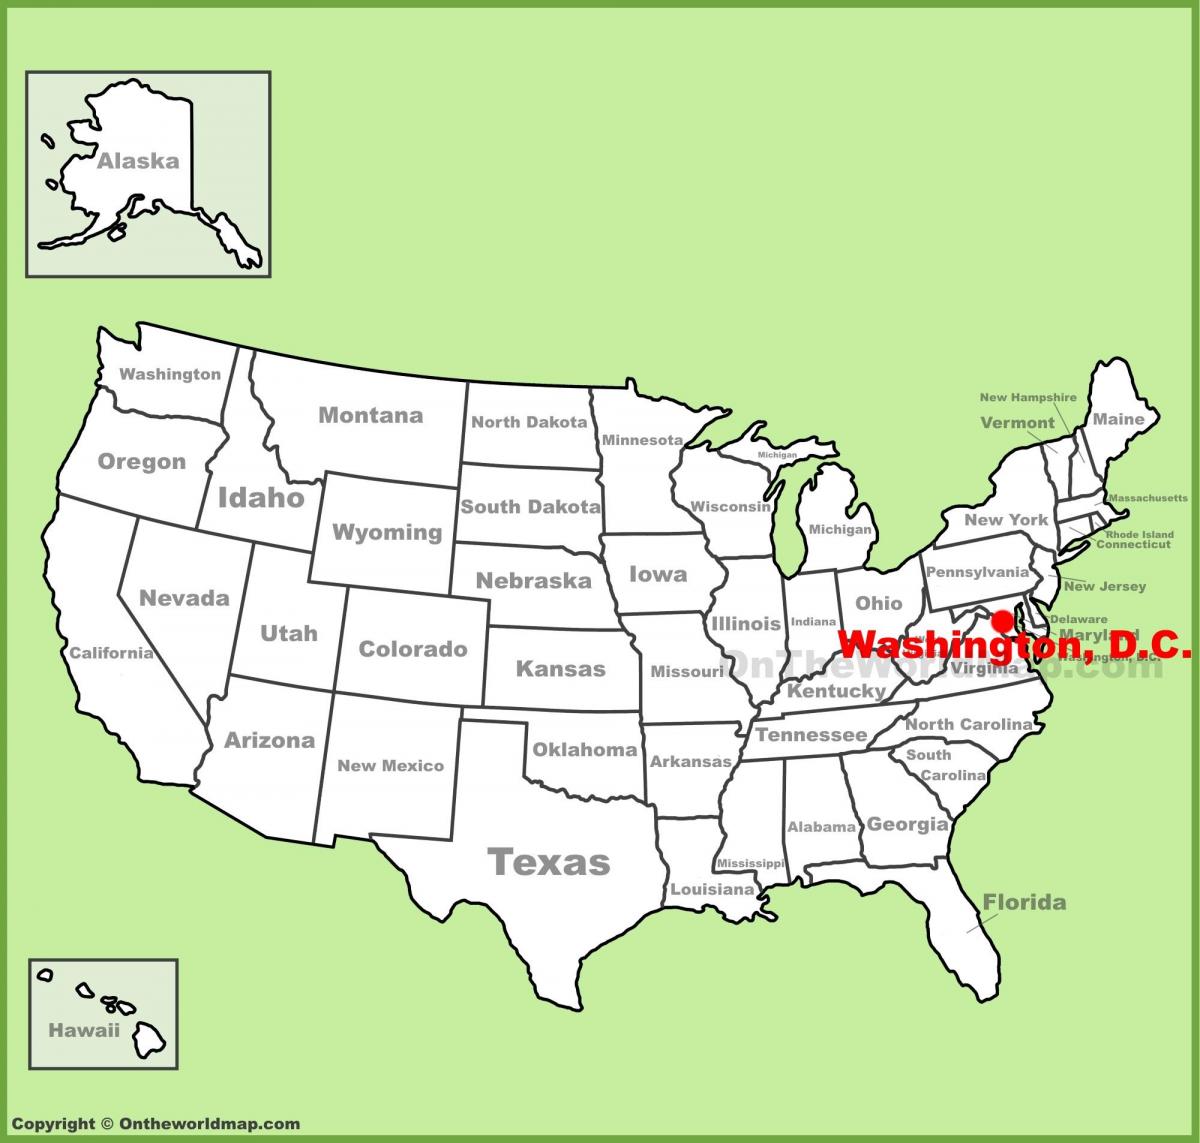 във Вашингтон се намира на САЩ на картата